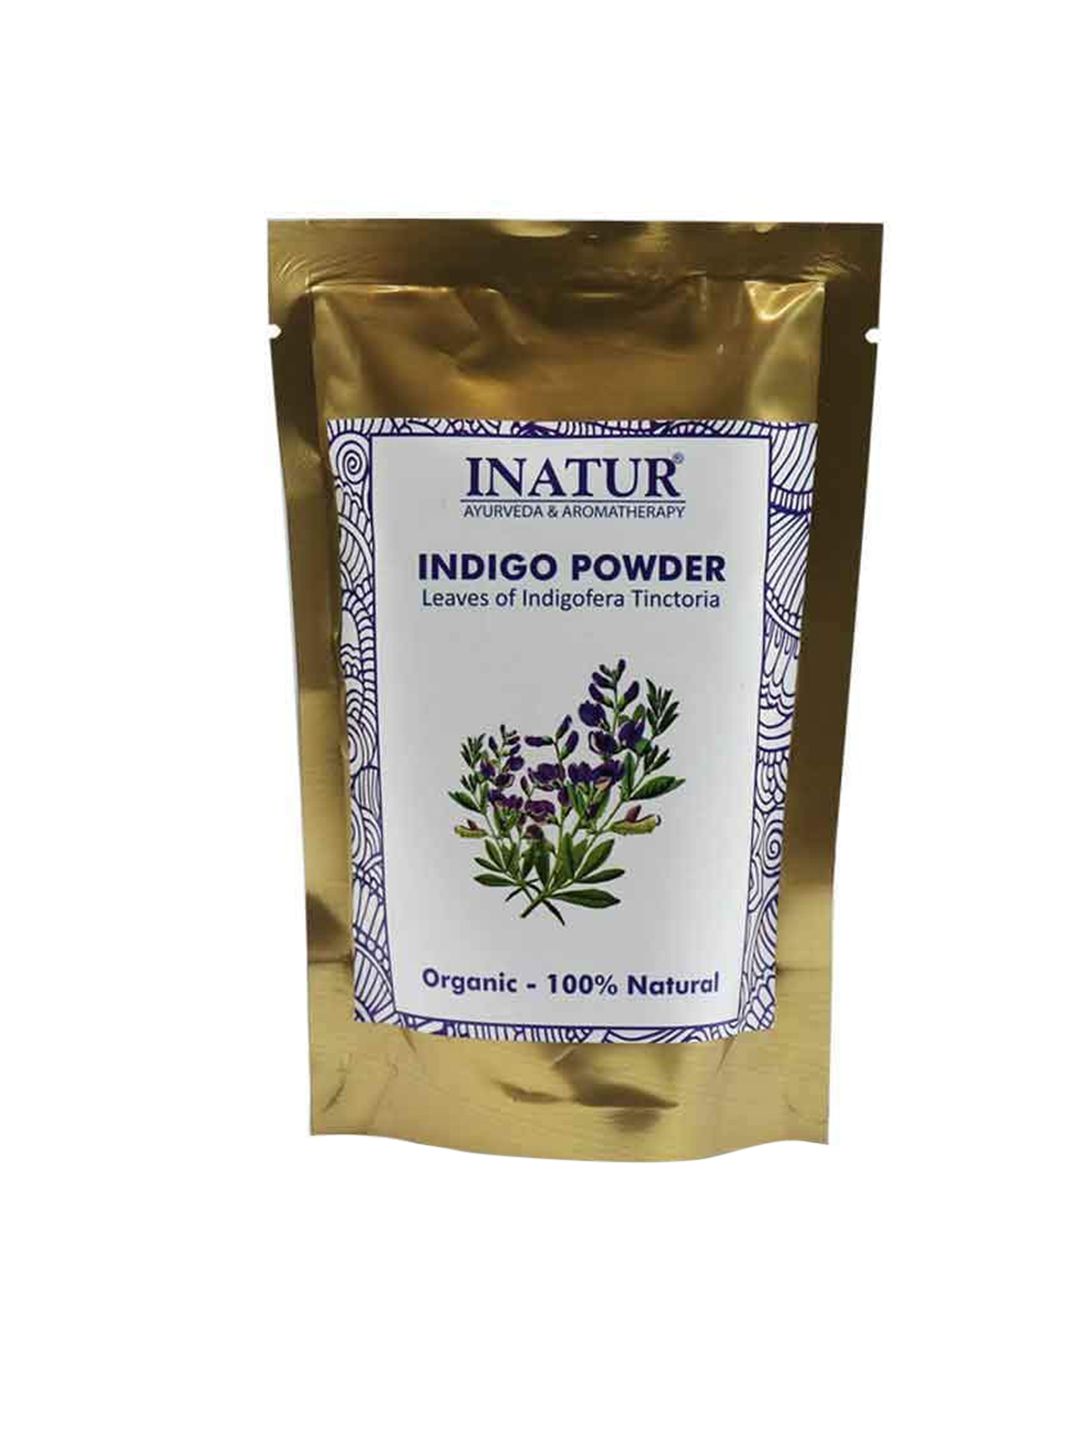 Inatur Leaves of Indigofera Tinctoria 100% Natural Organic Indigo Powder - 100 g Price in India